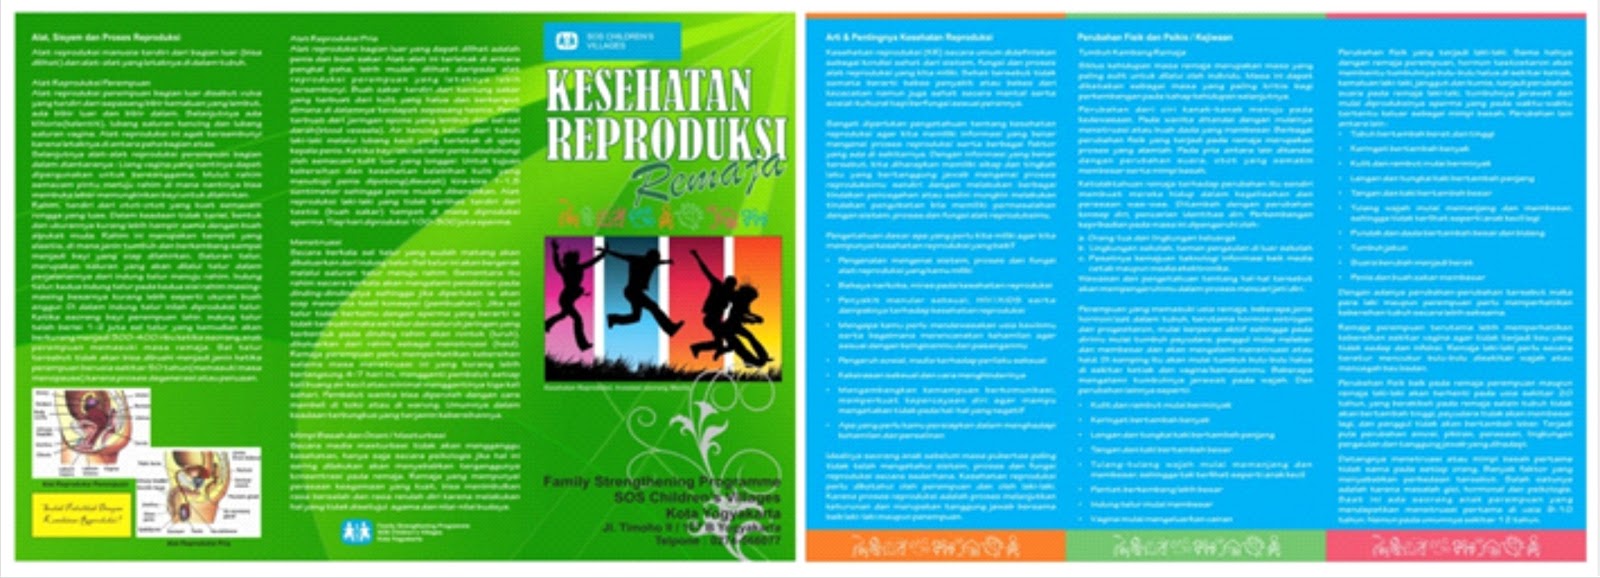 SOS Children's Village Yogyakarta: Leaflet untuk Media ...